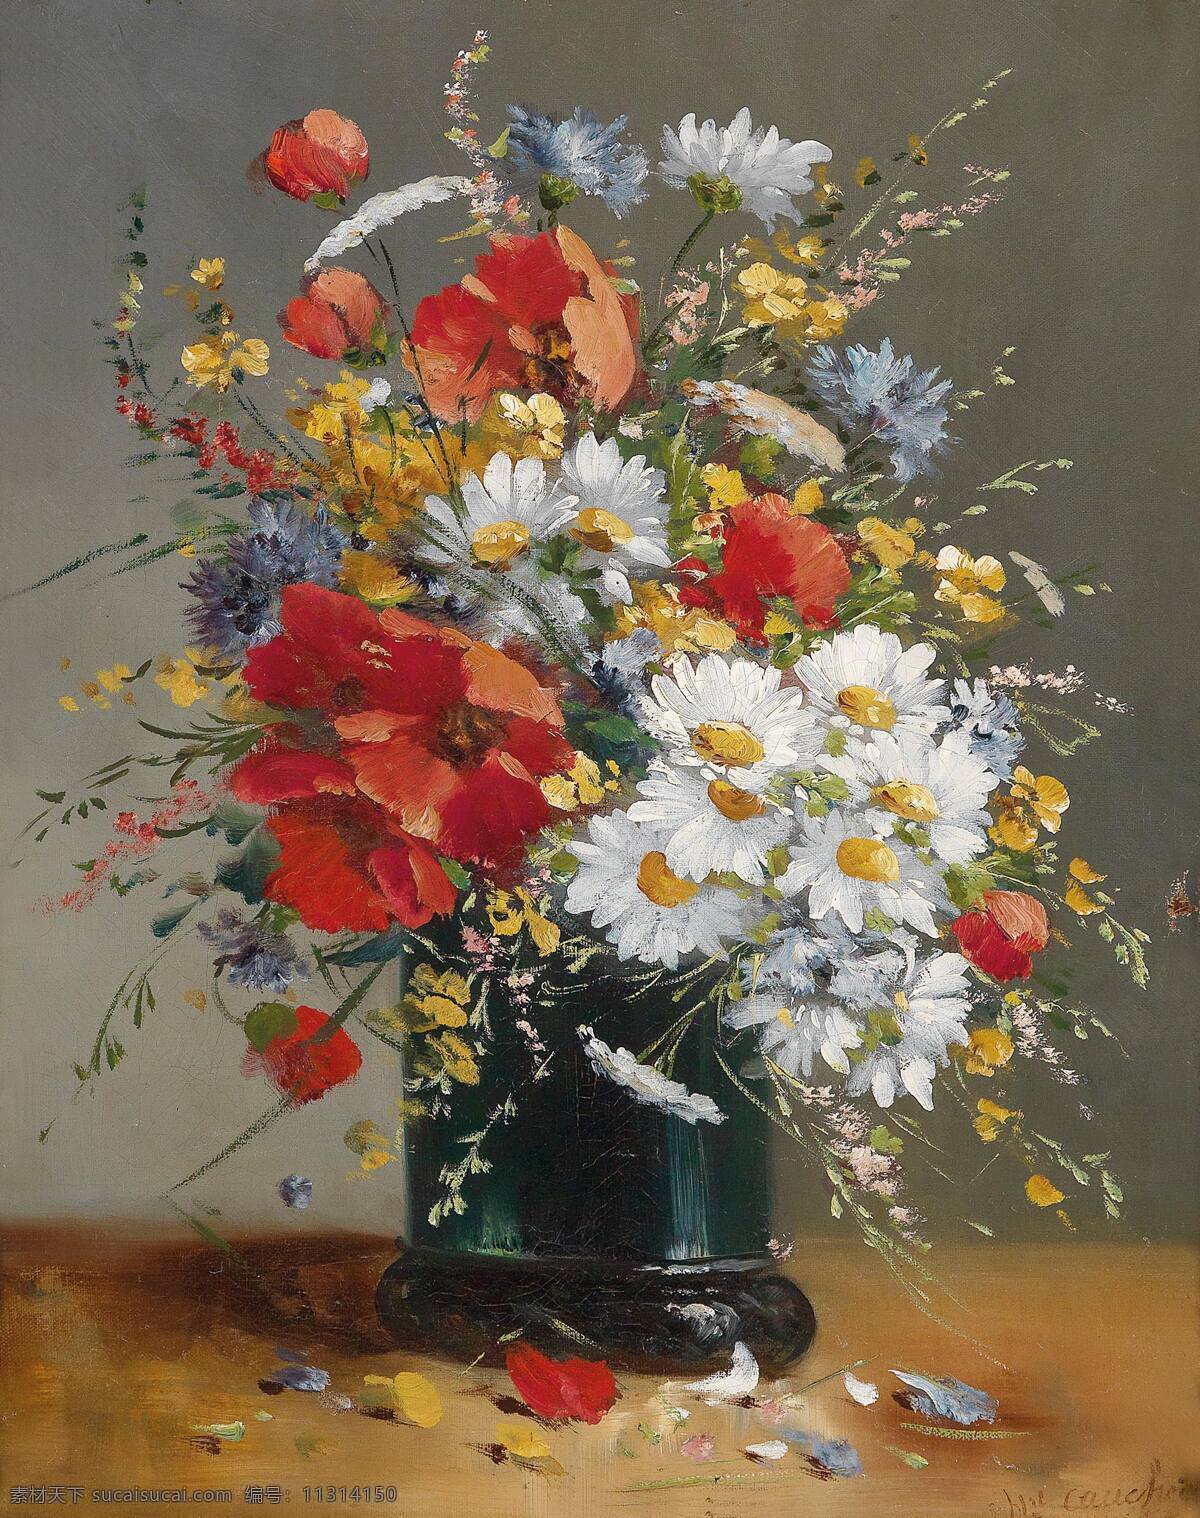 静物鲜花 尤金 亨利 克 舒 瓦 作品 法国画家 混搭鲜花 散落的花瓣 19世纪油画 油画 绘画书法 文化艺术